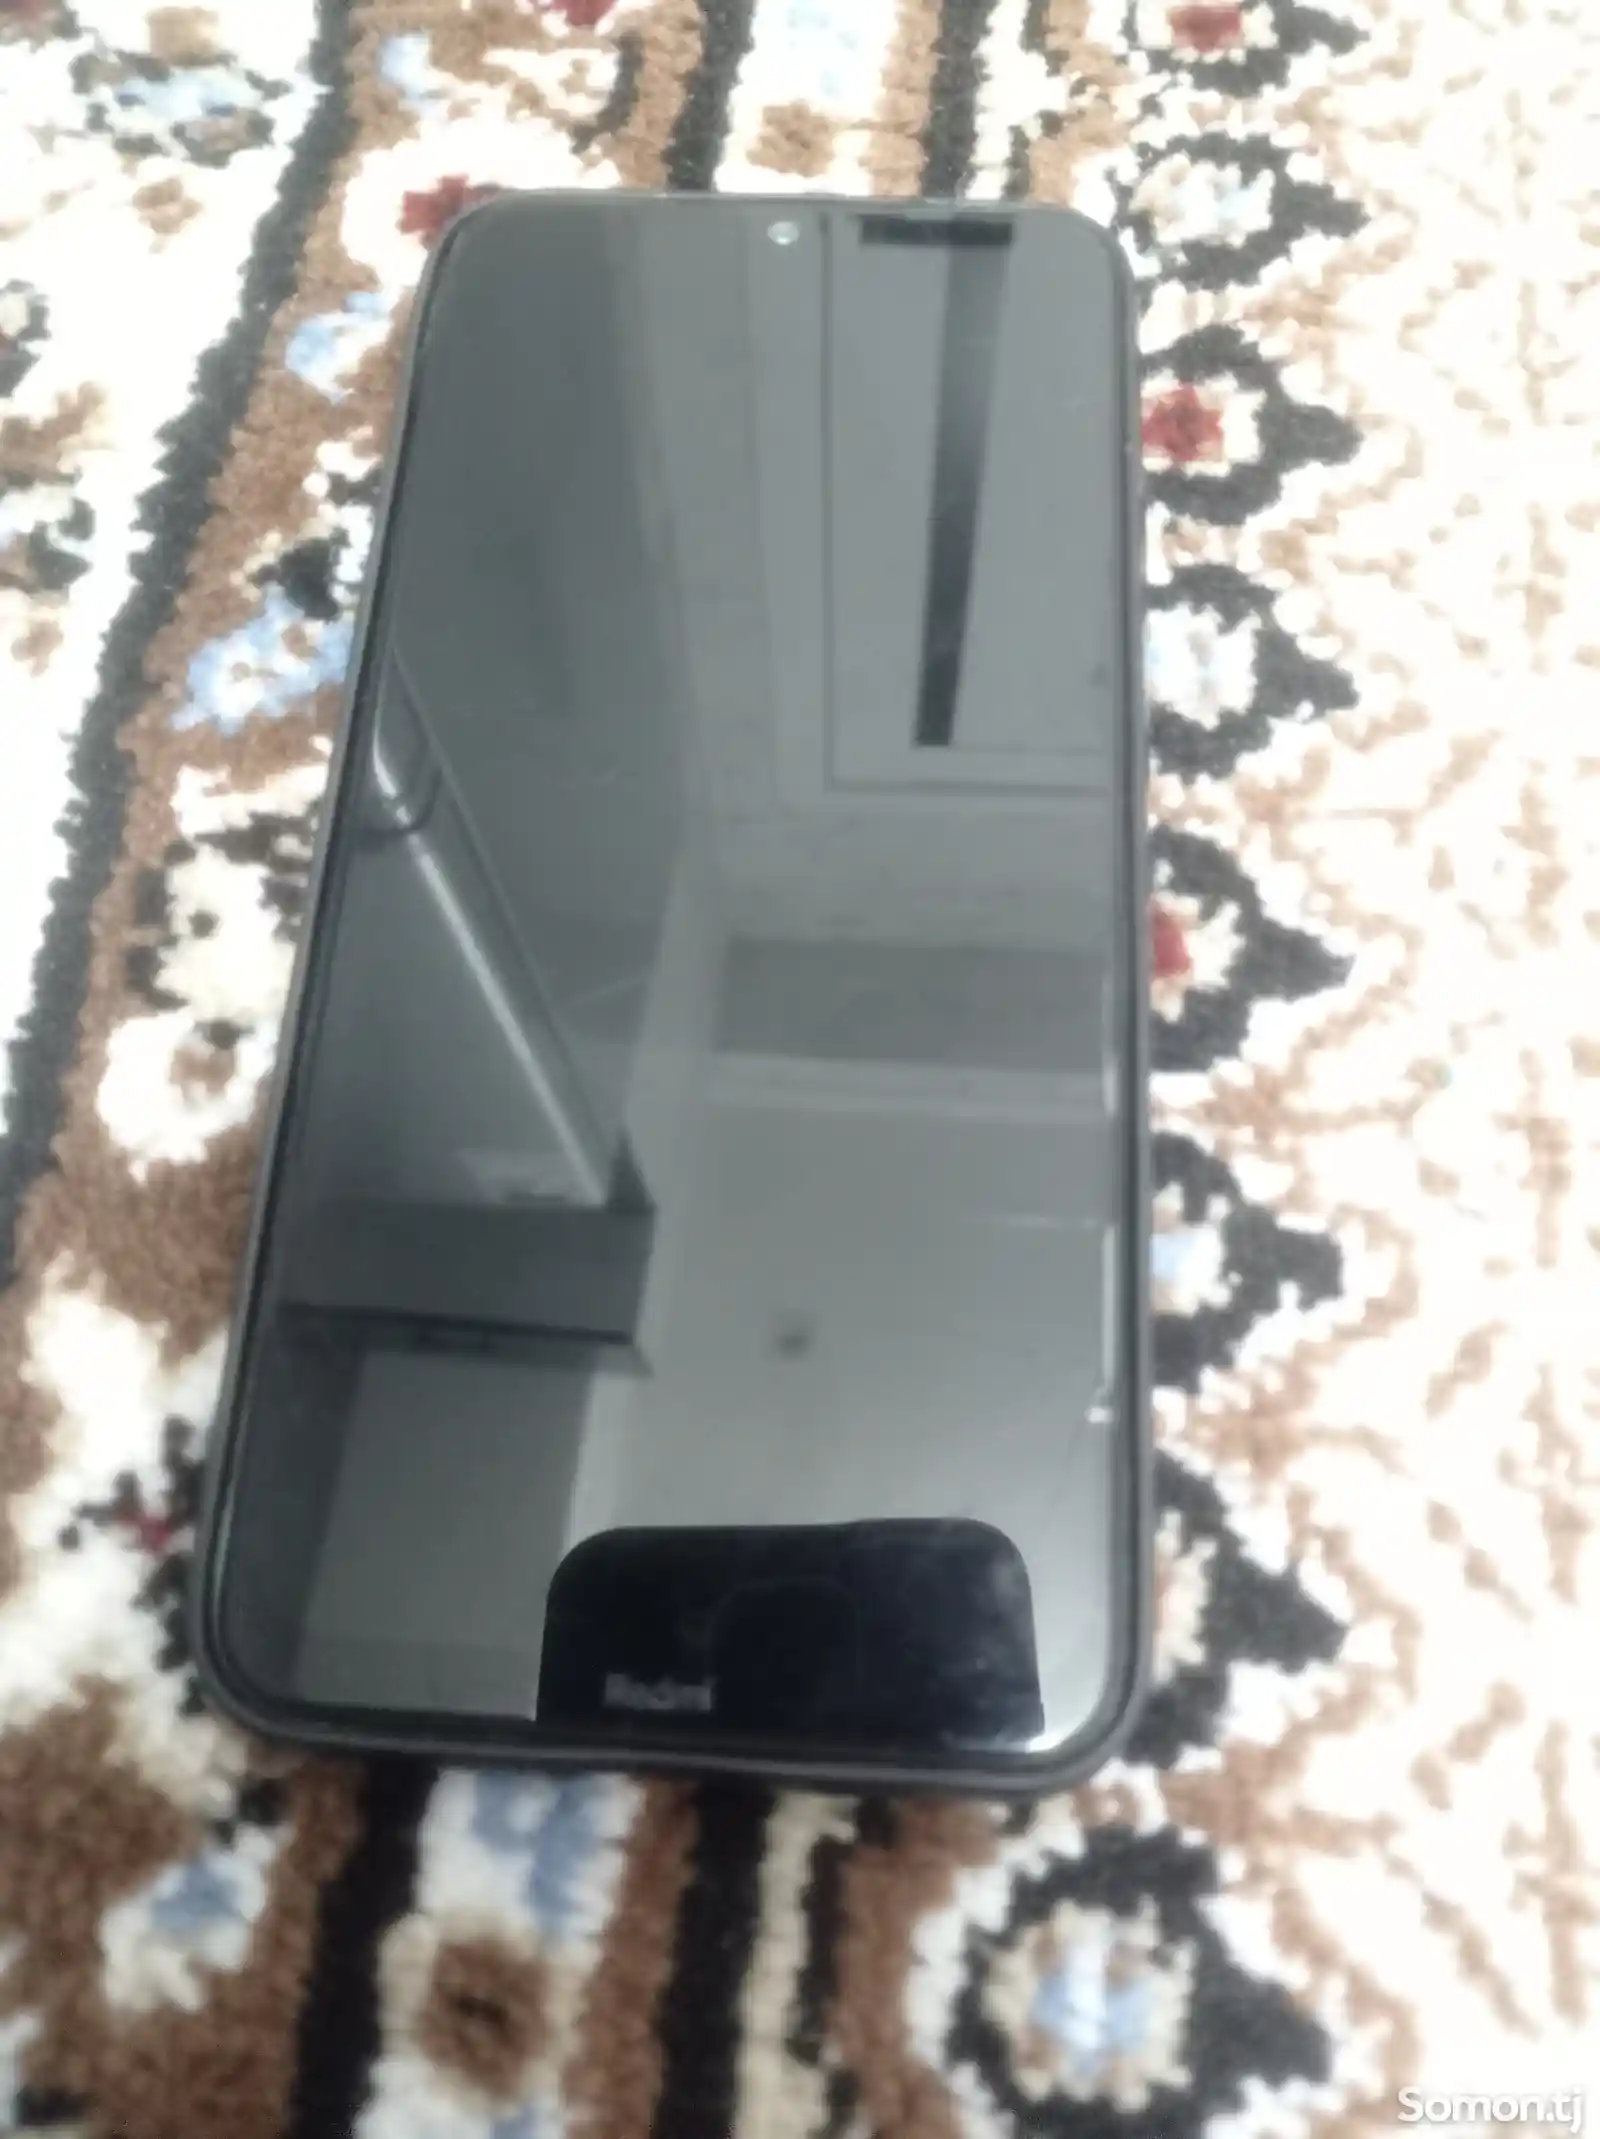 Xiaomi Redmi note 8-2